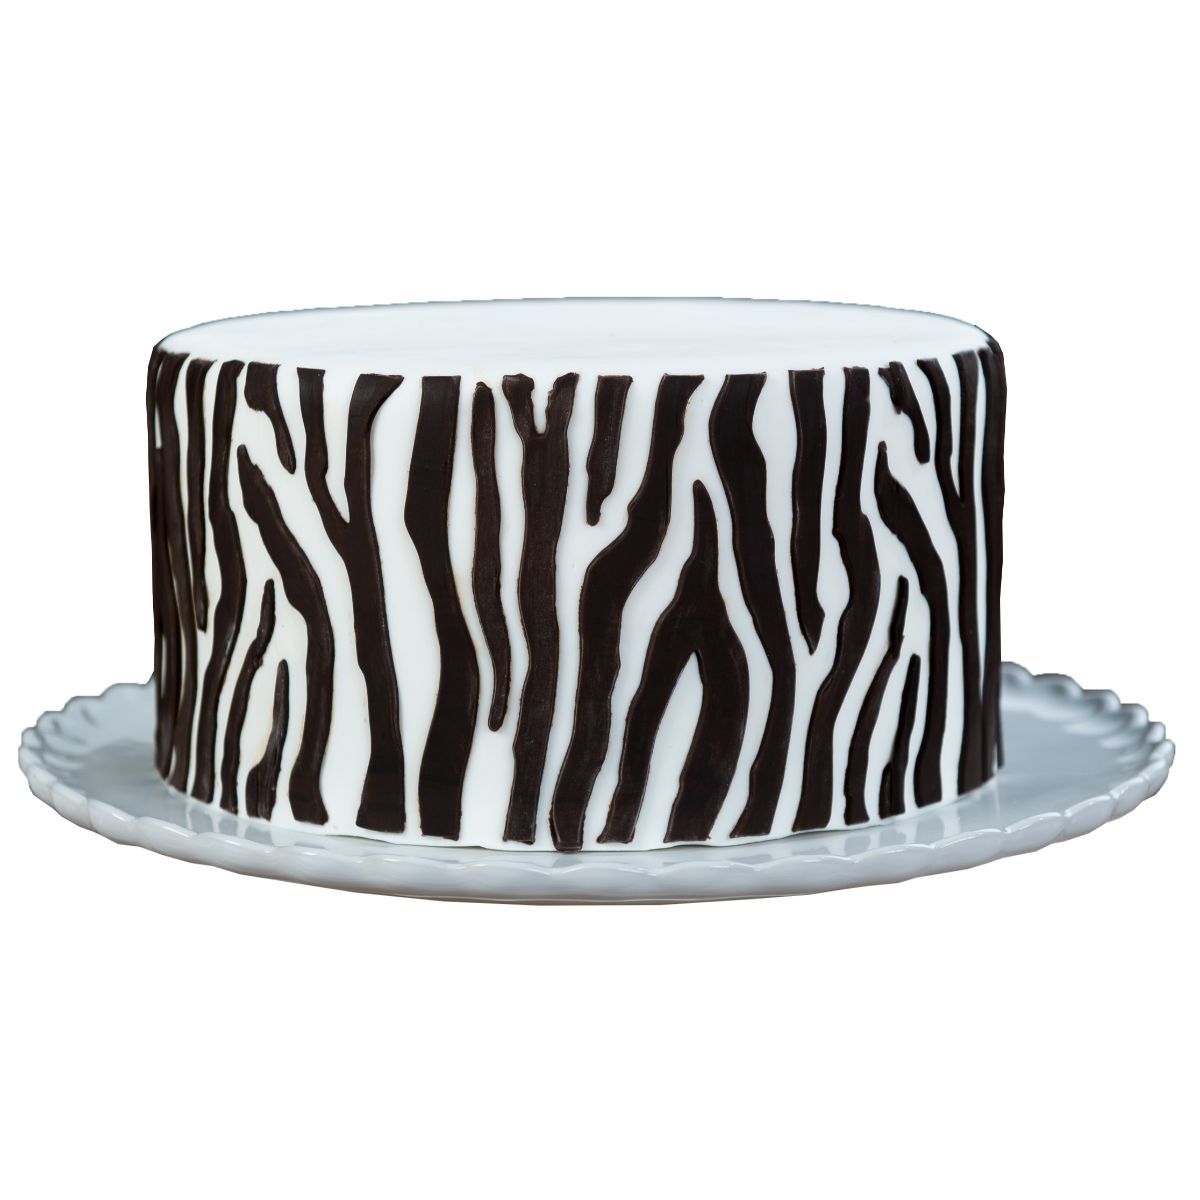 Zebra Onlay® - Bake Supply Plus